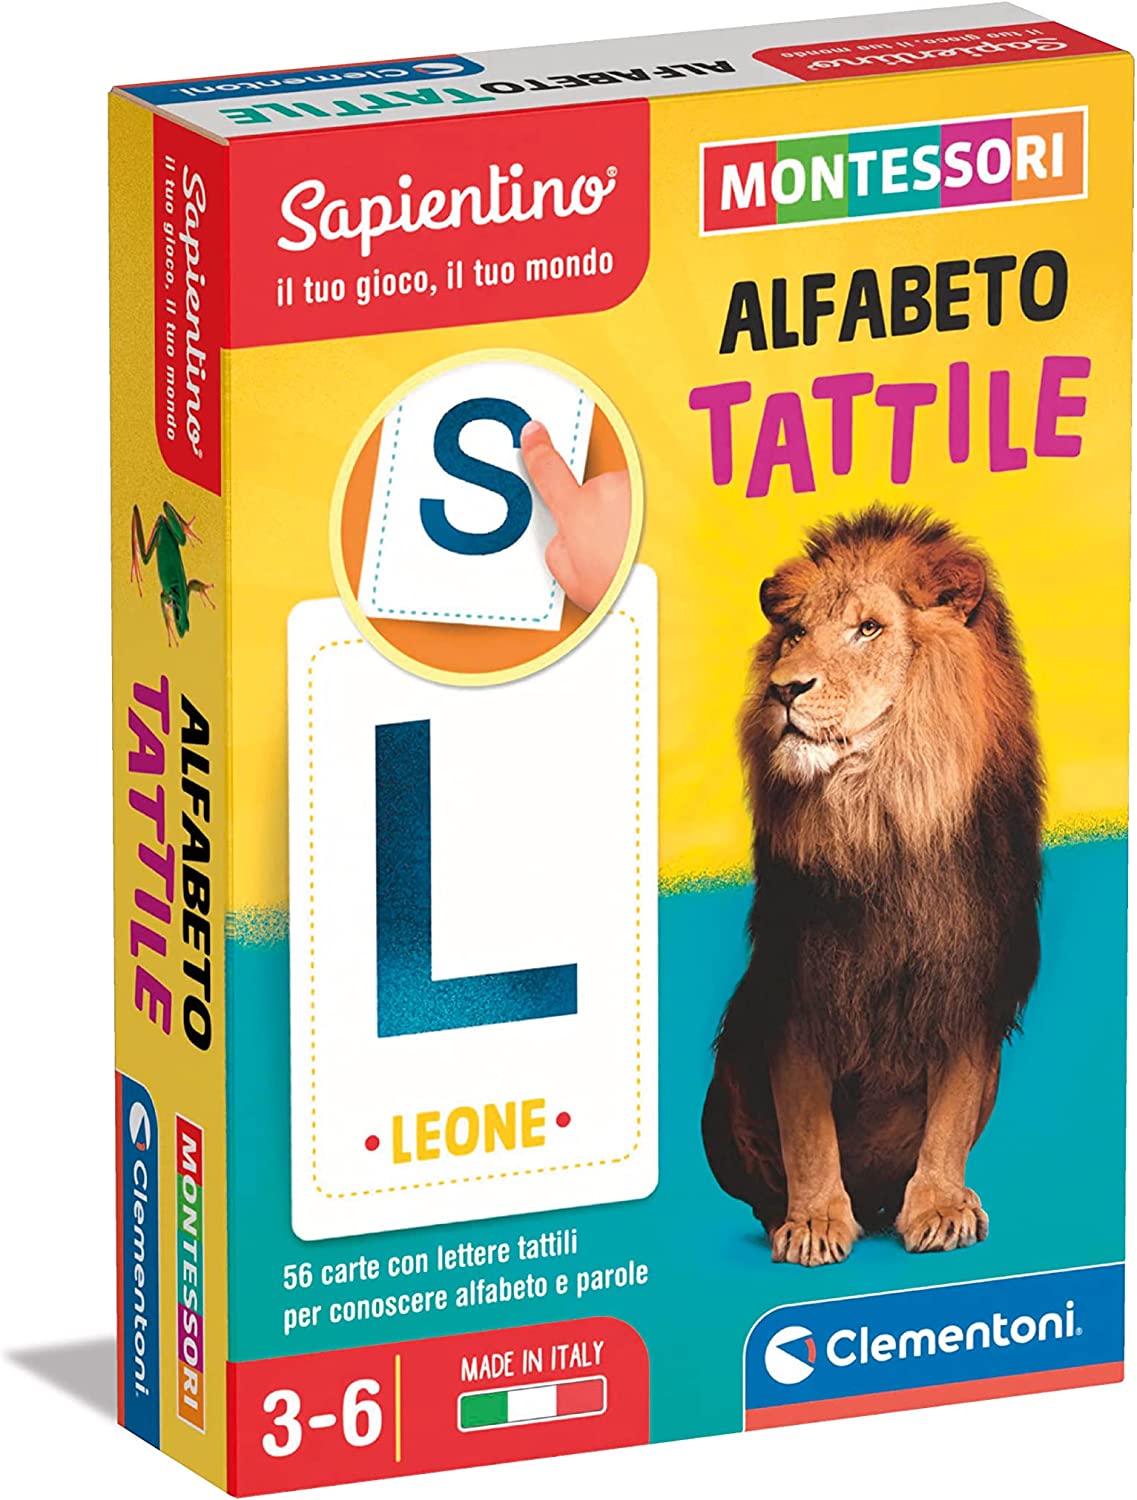 Clementoni - Sapientino Montessori, Carte Alfabeto Tattile, gioco Montessori  3 anni, flashcard alfabeto e lettere, propedeutico